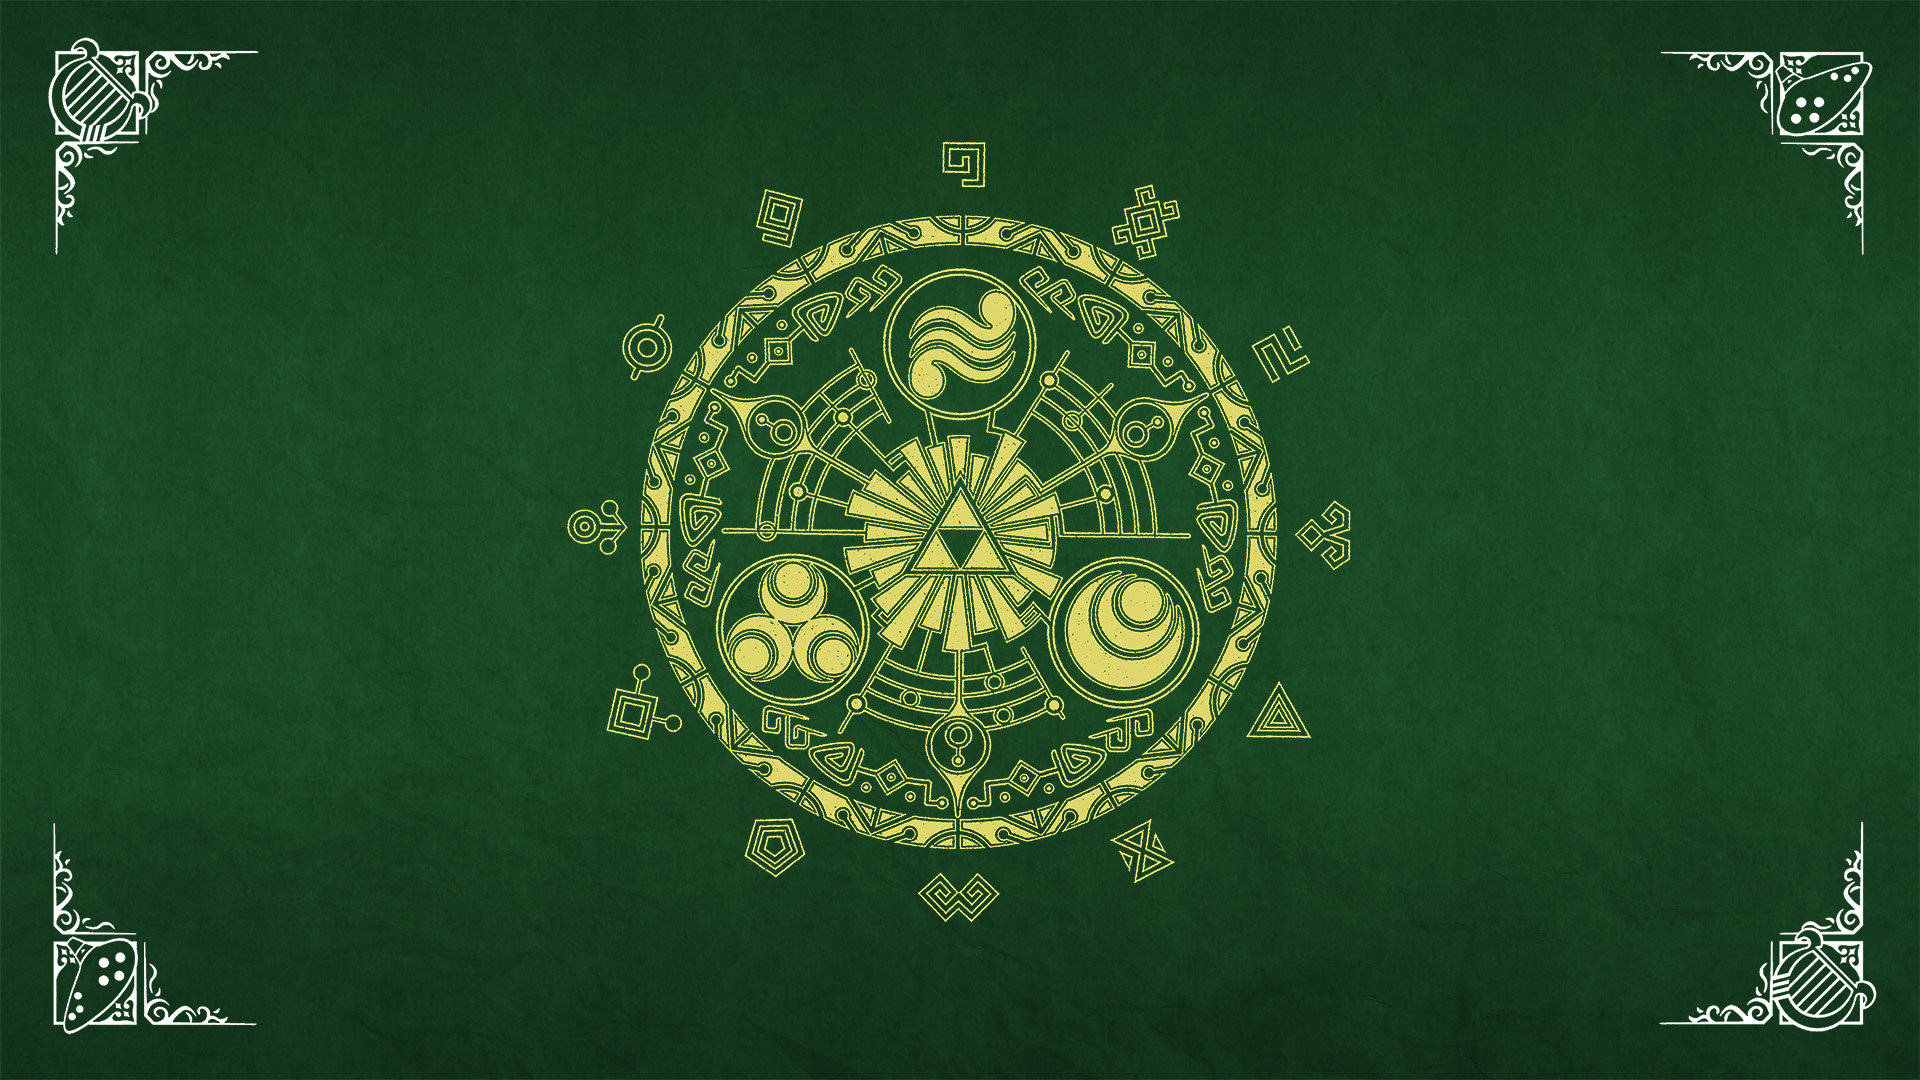 The Legend Of Zelda Book Cover Wallpaper